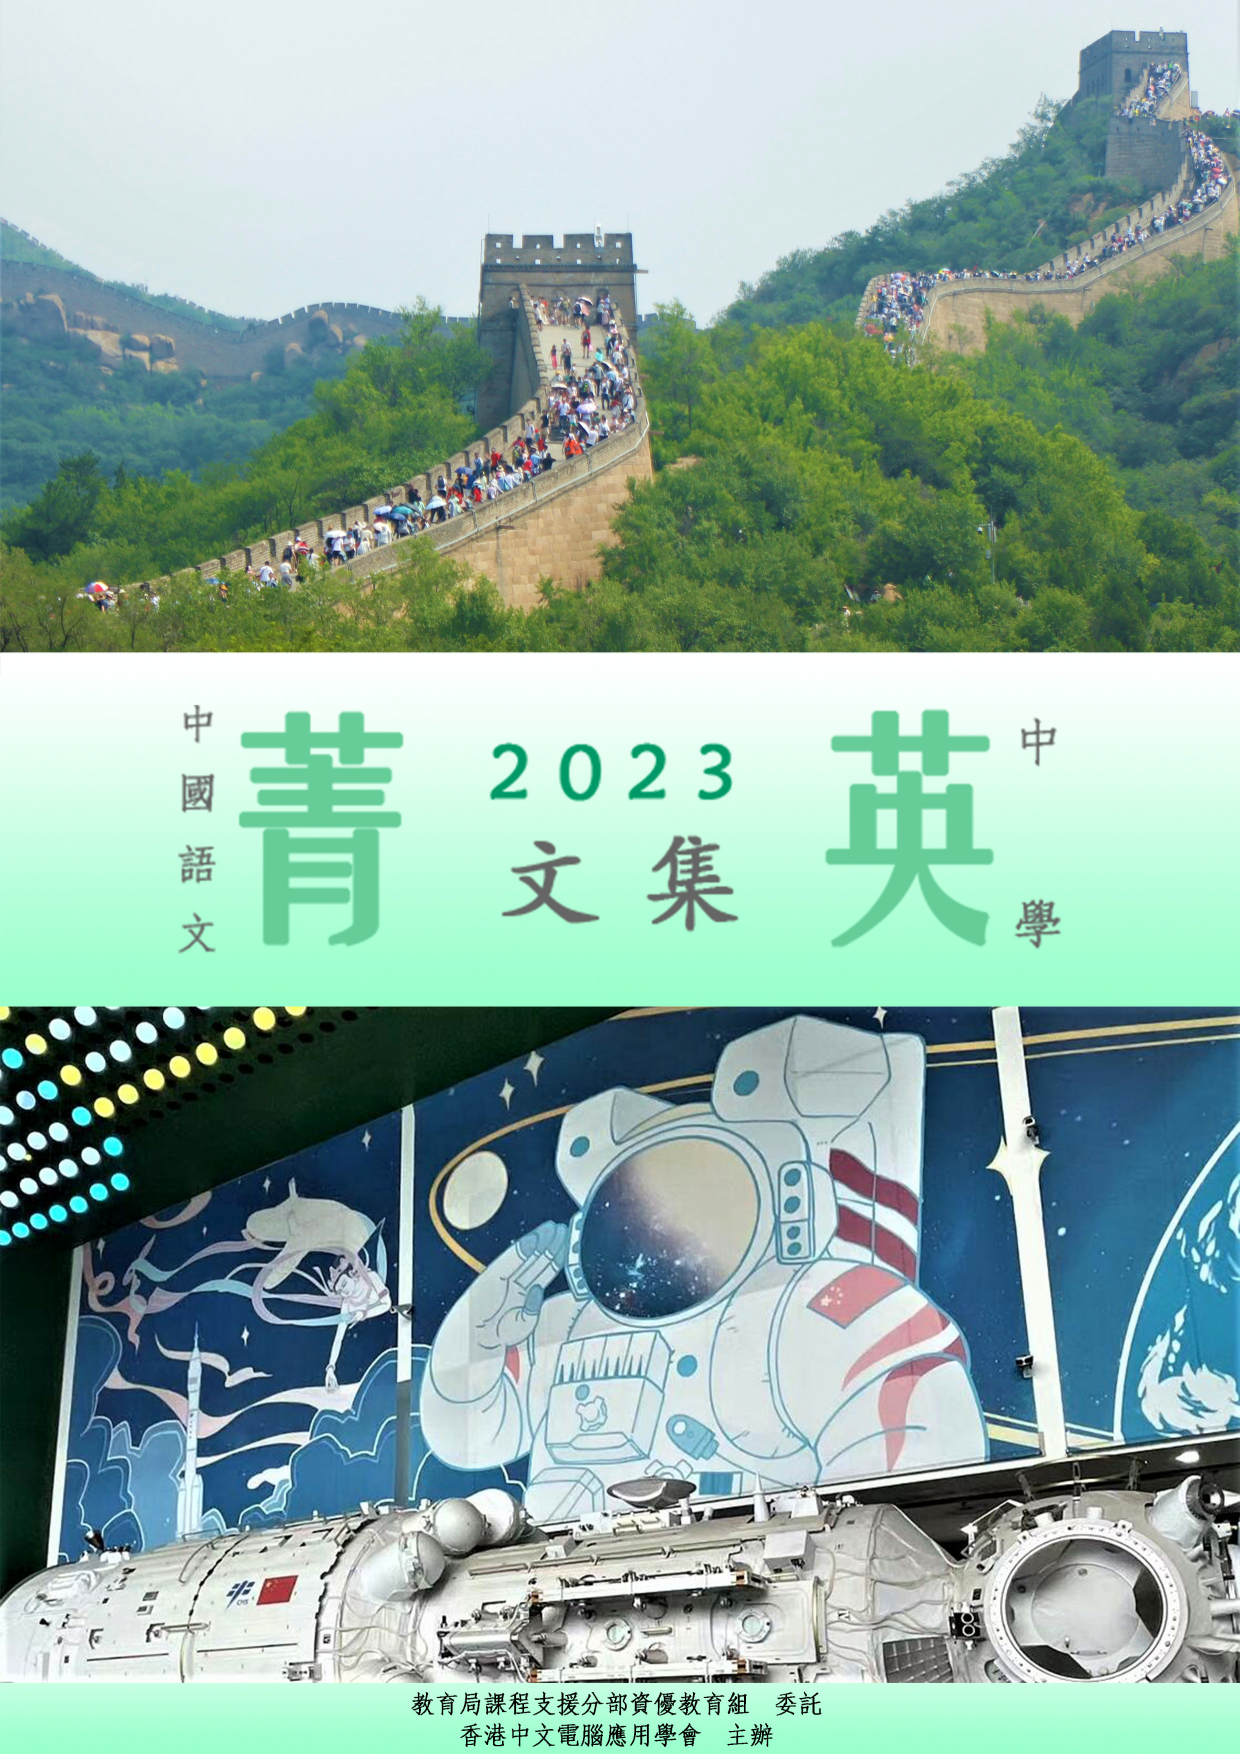 中国语文菁英计划2022/23菁英文集(中学组)